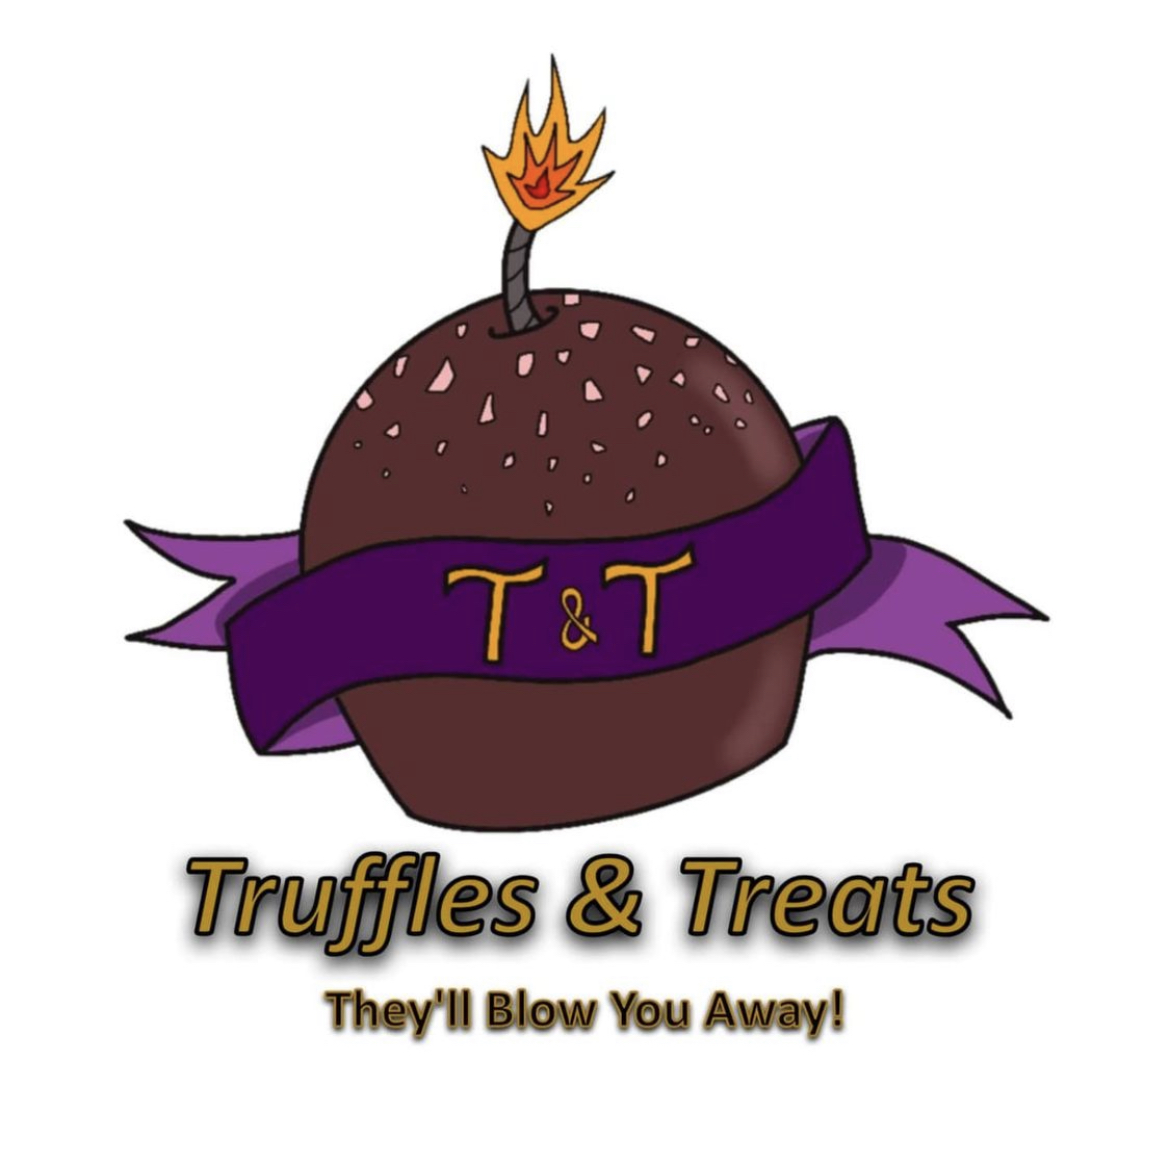 Truffles & Treats